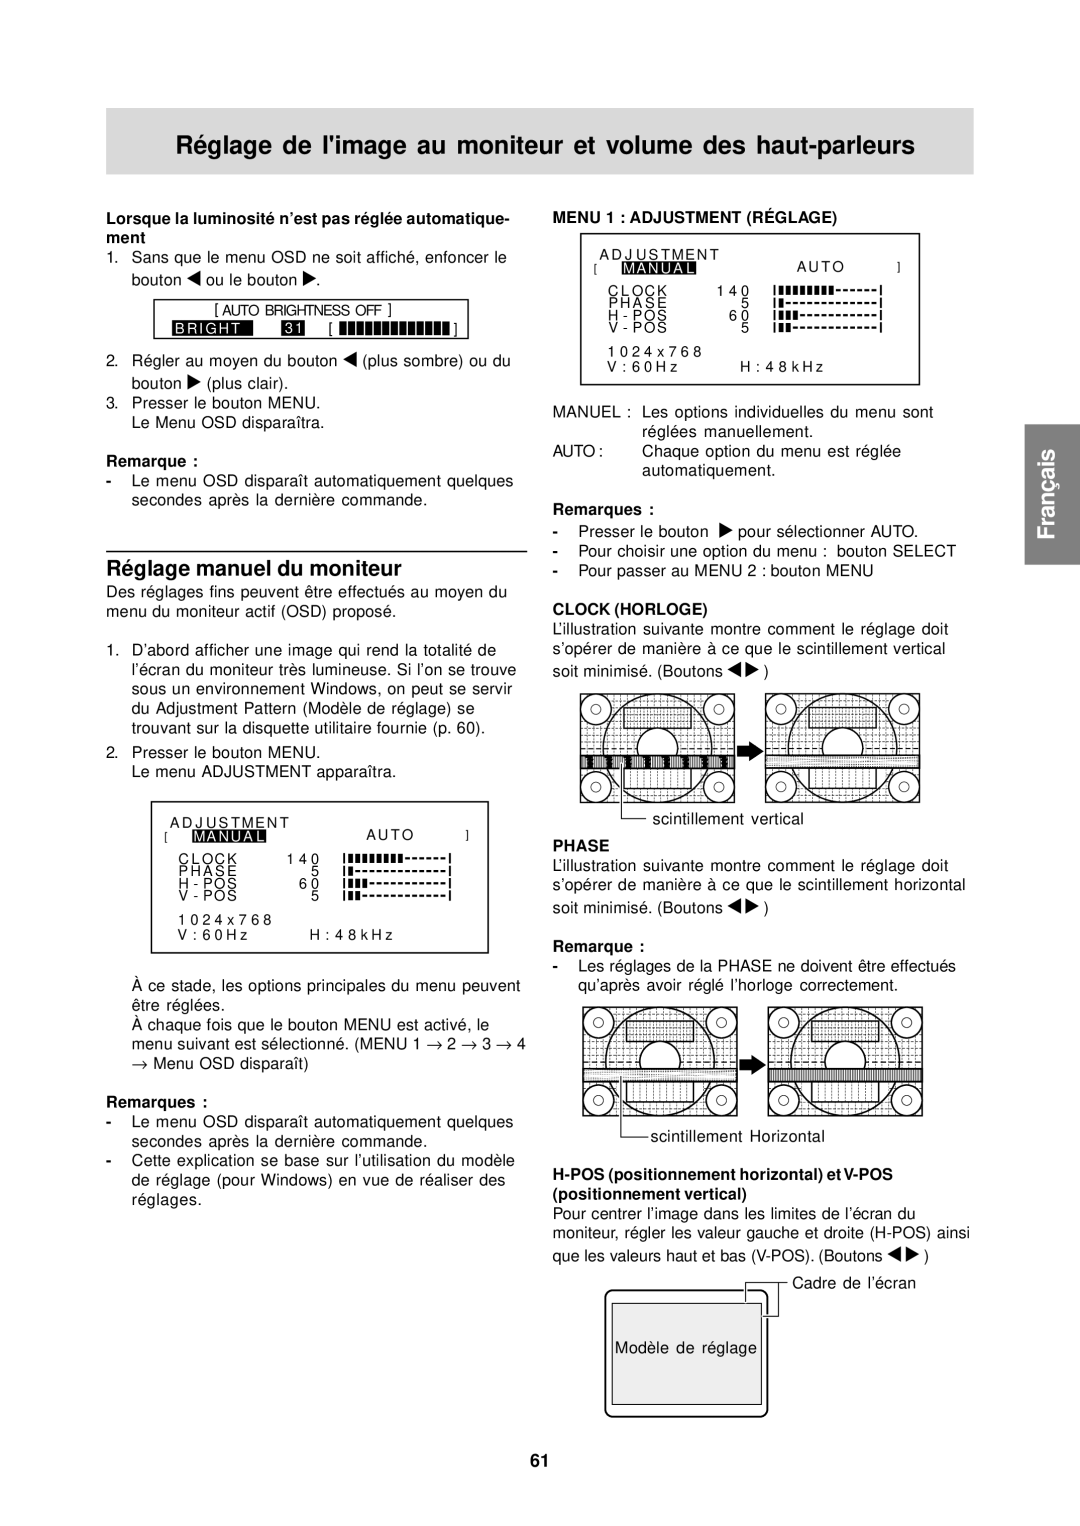 Sharp LL-T15S1 operation manual Réglage manuel du moniteur, Lorsque la luminosité n’est pas réglée automatique, Ment 